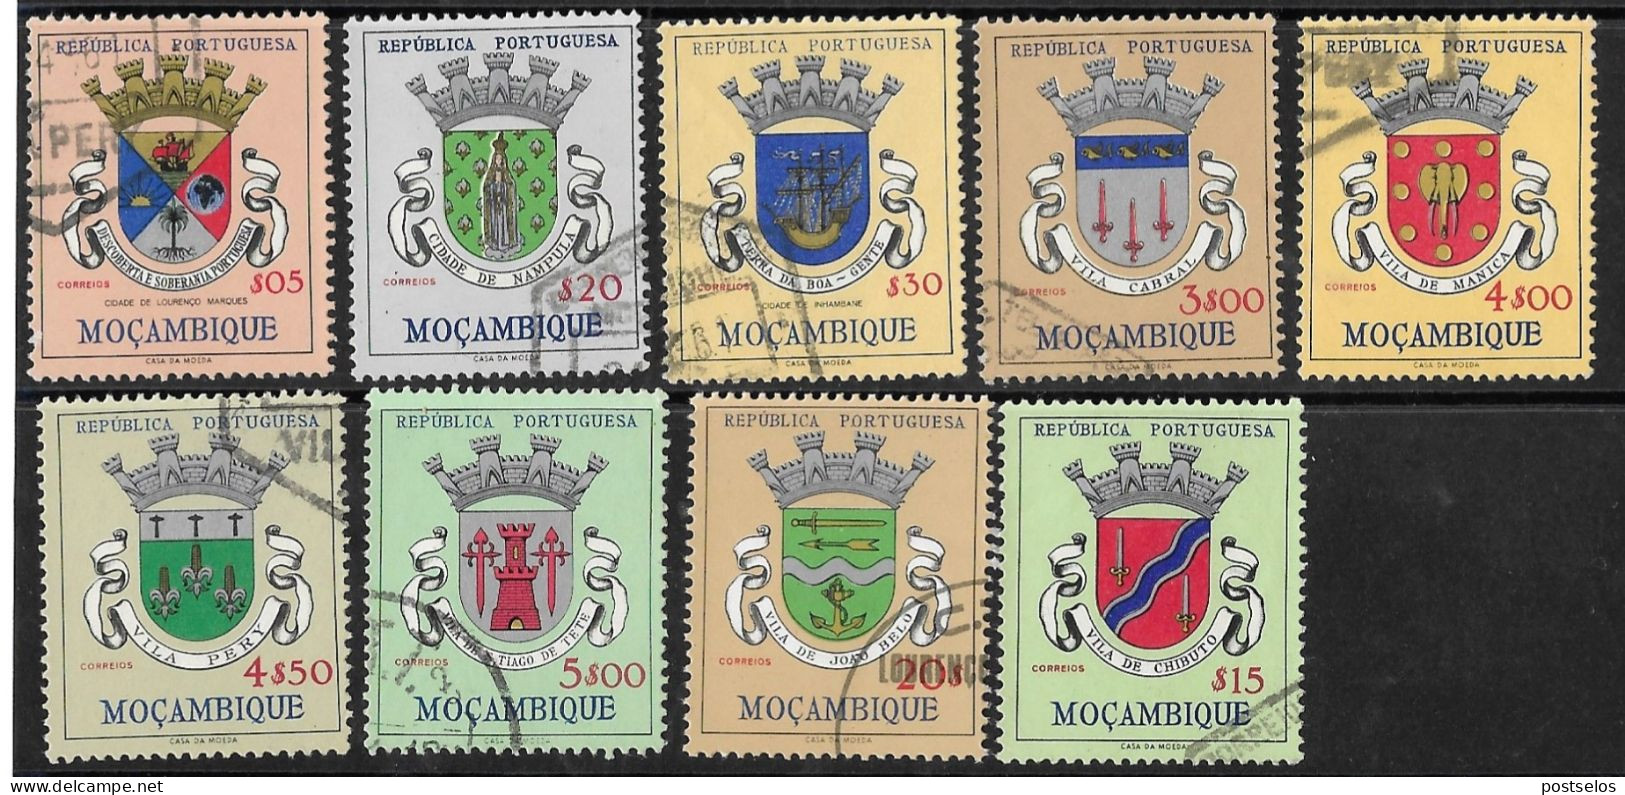 Moçambique - Mozambique